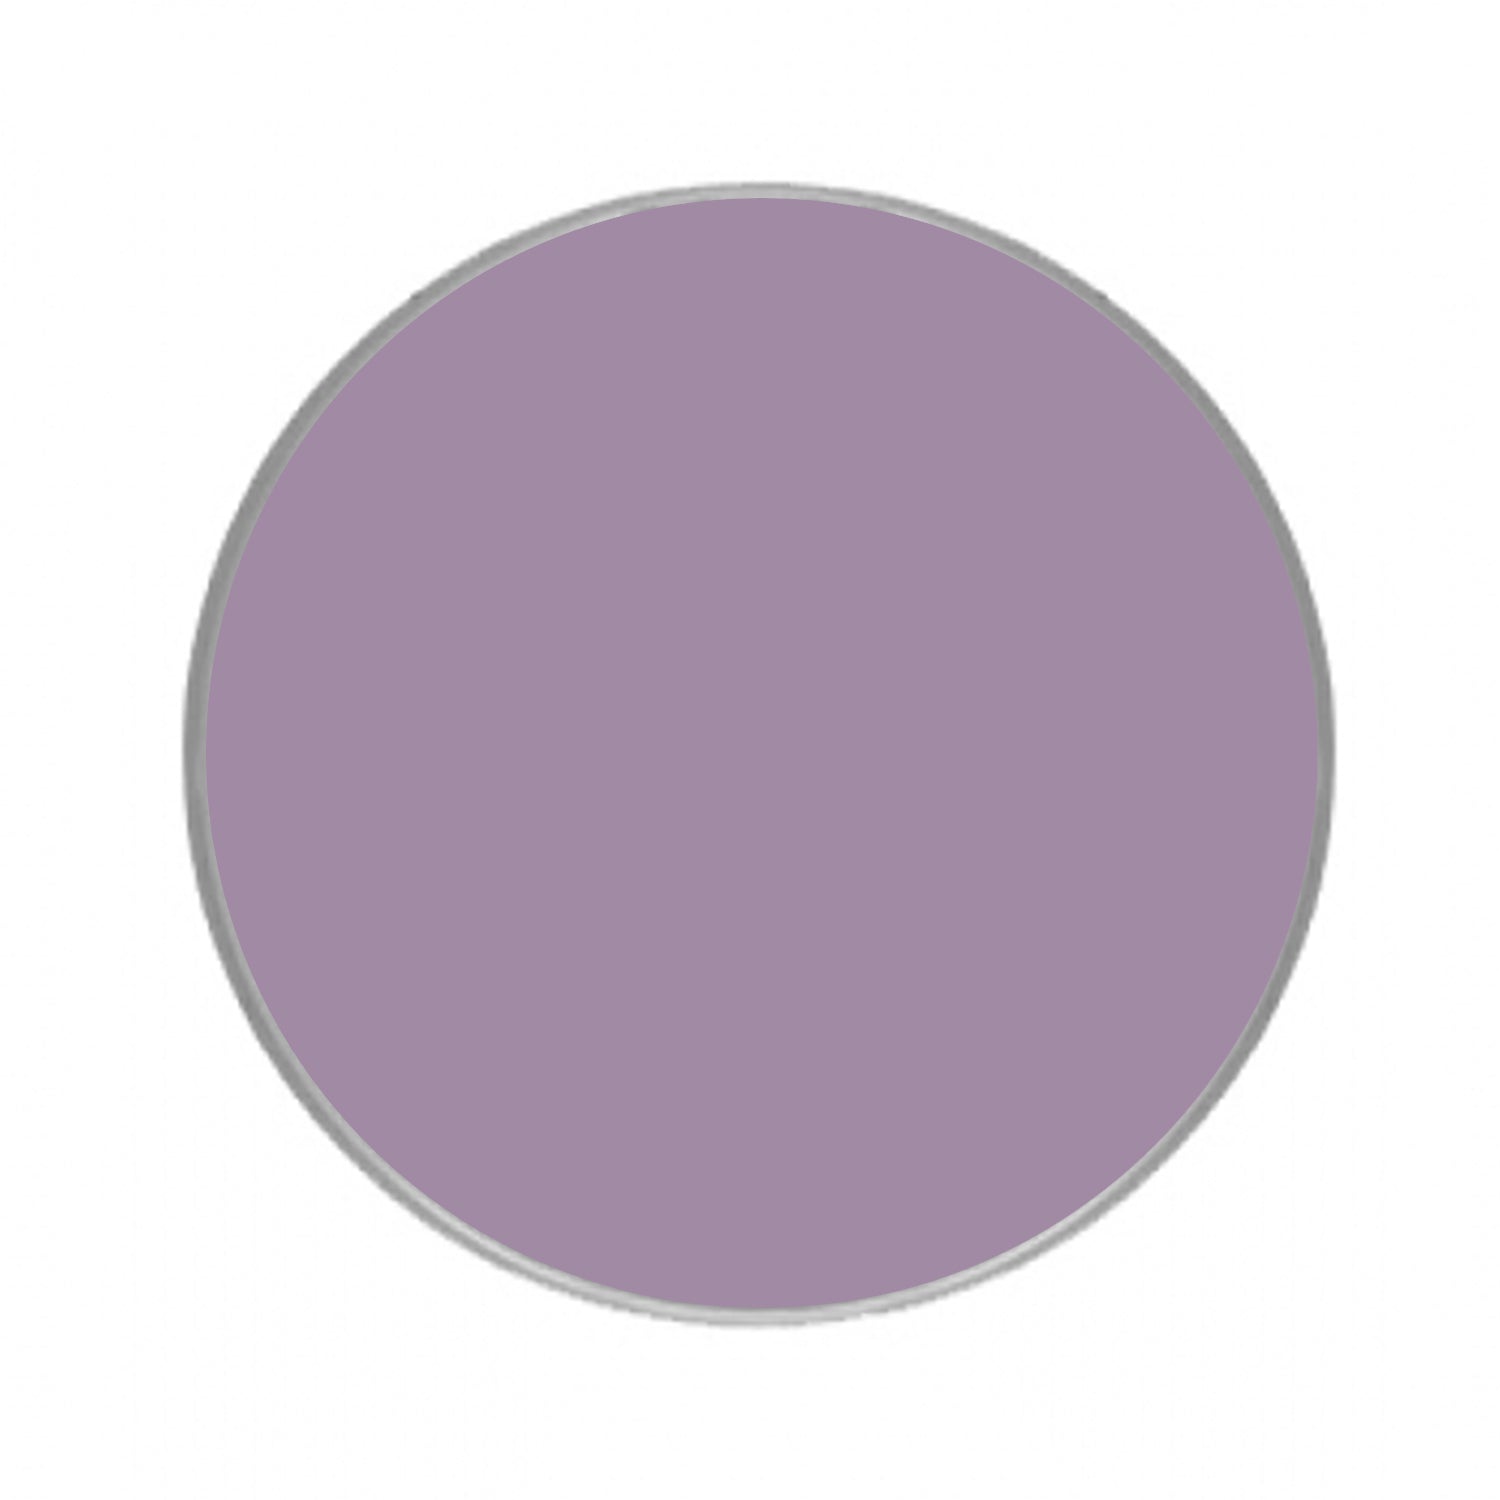 Kryolan Aquacolor Purple Face Paints - Light Purple 482 (55 ml)